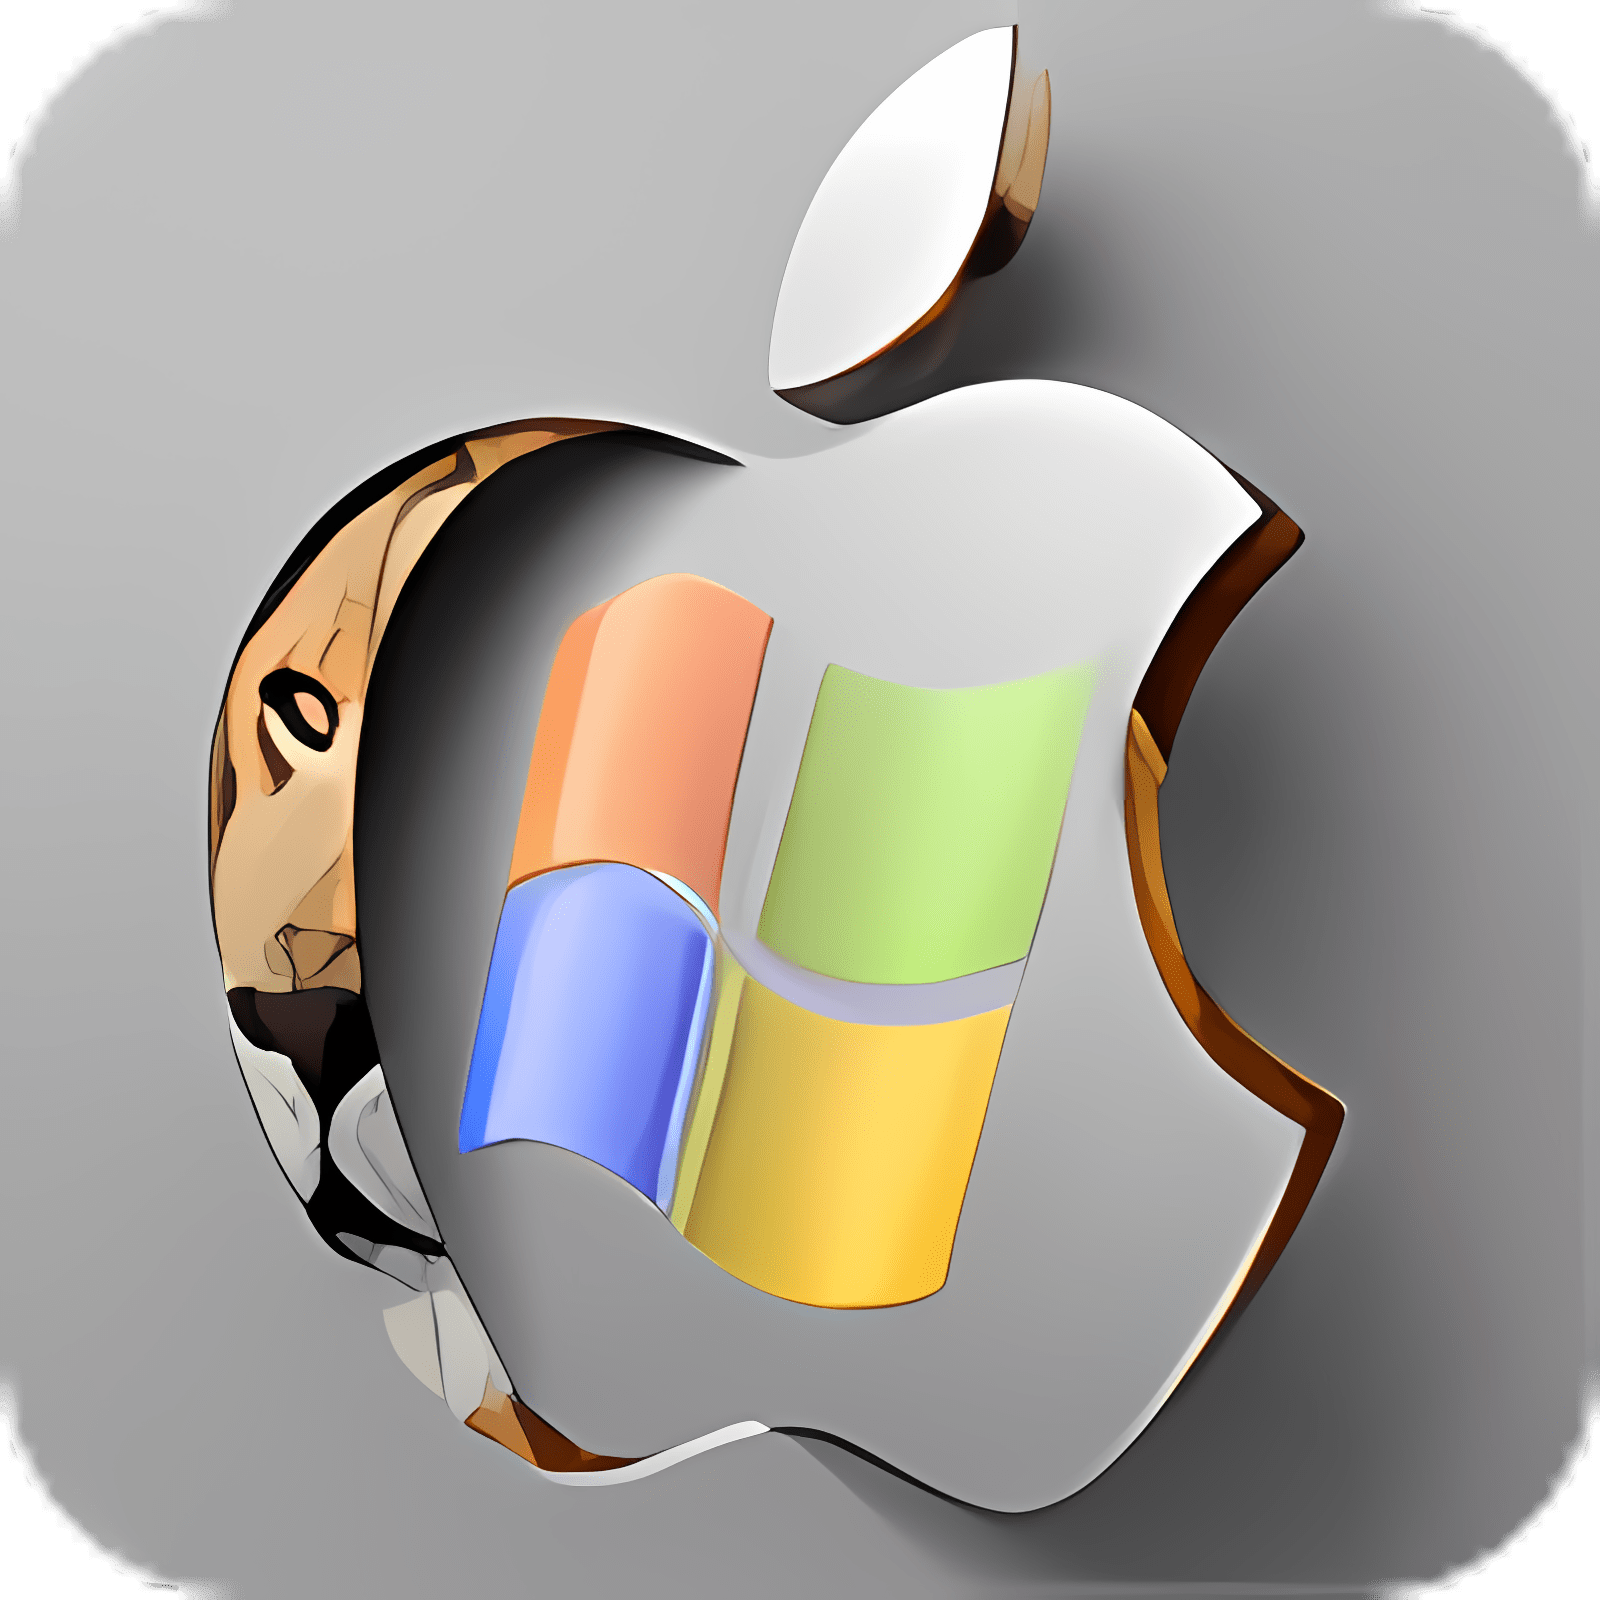 free download mac os x lion skin pack windows 7